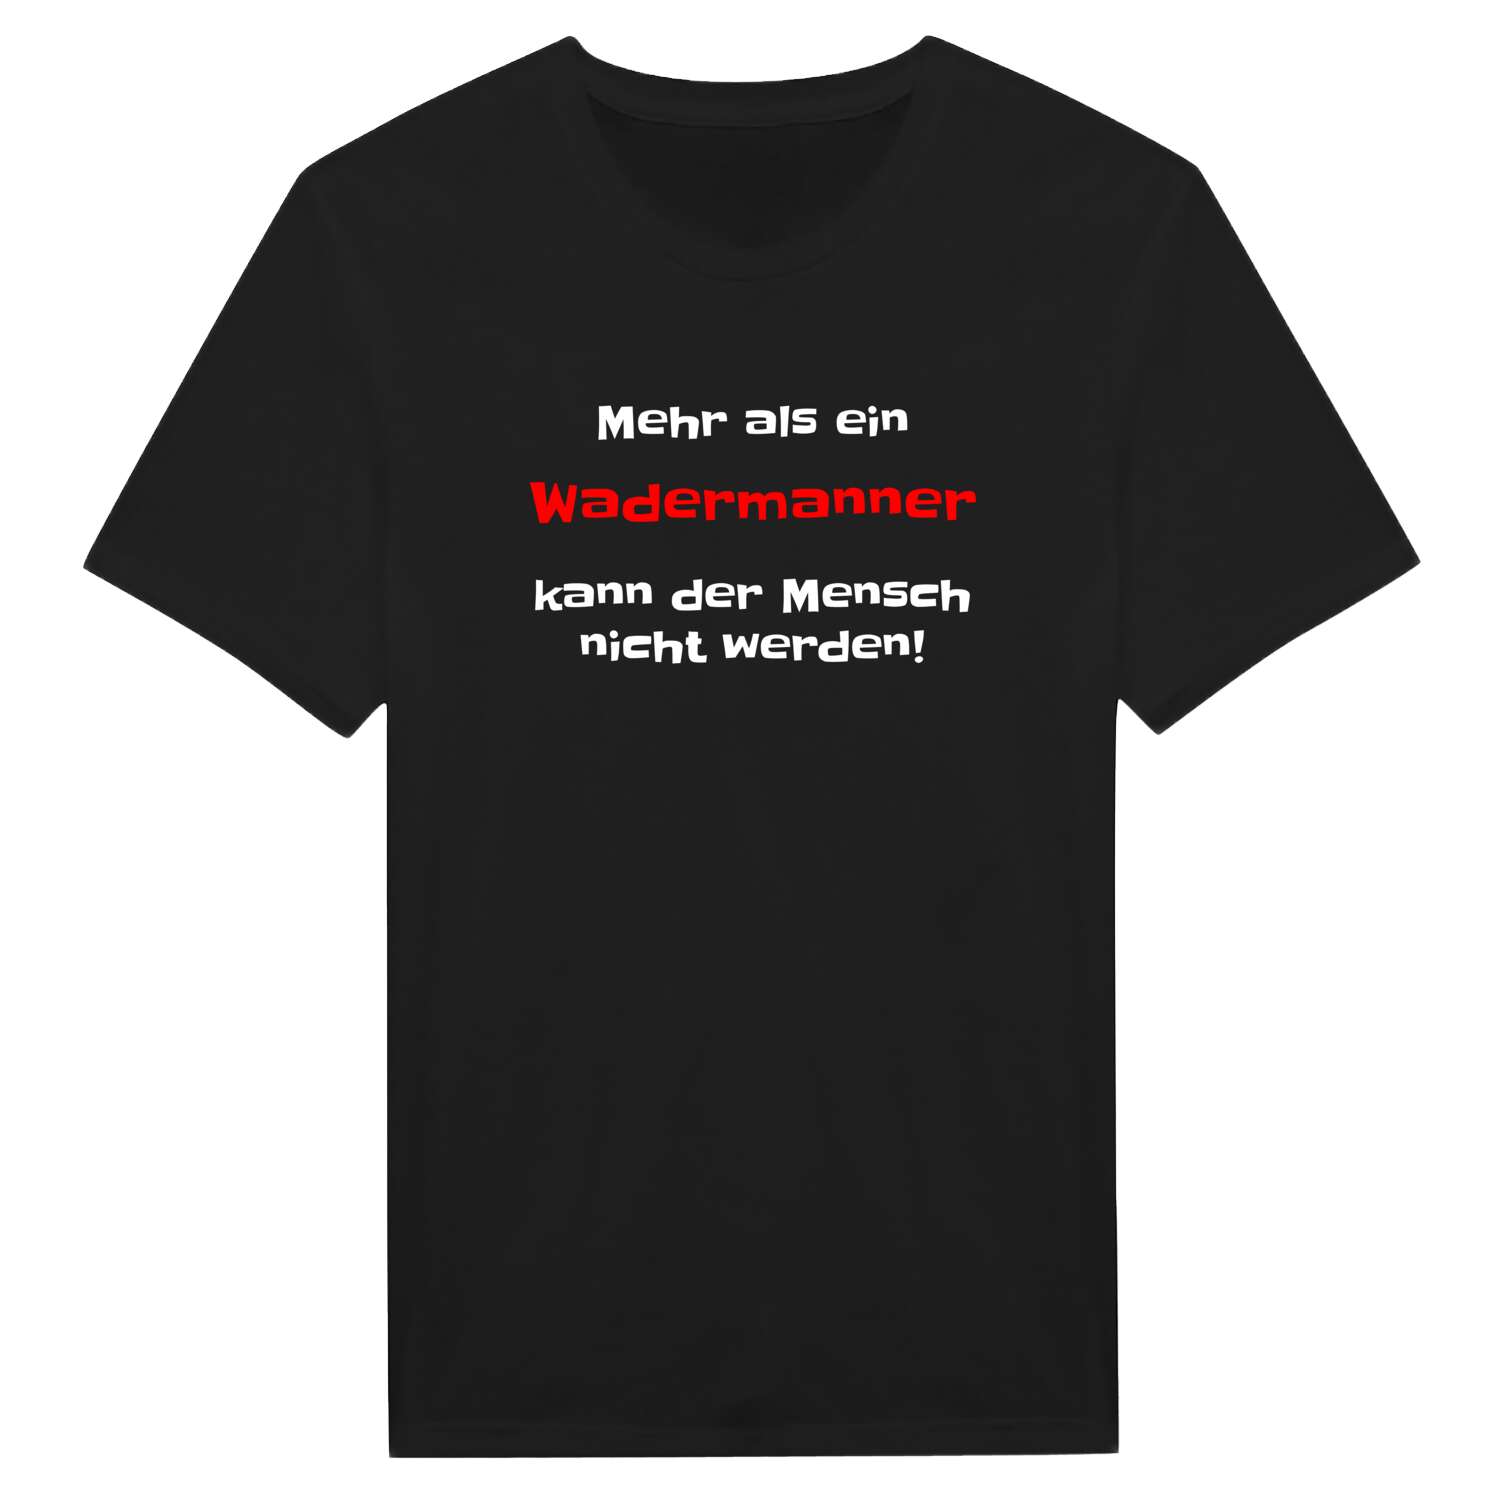 Wadermann T-Shirt »Mehr als ein«